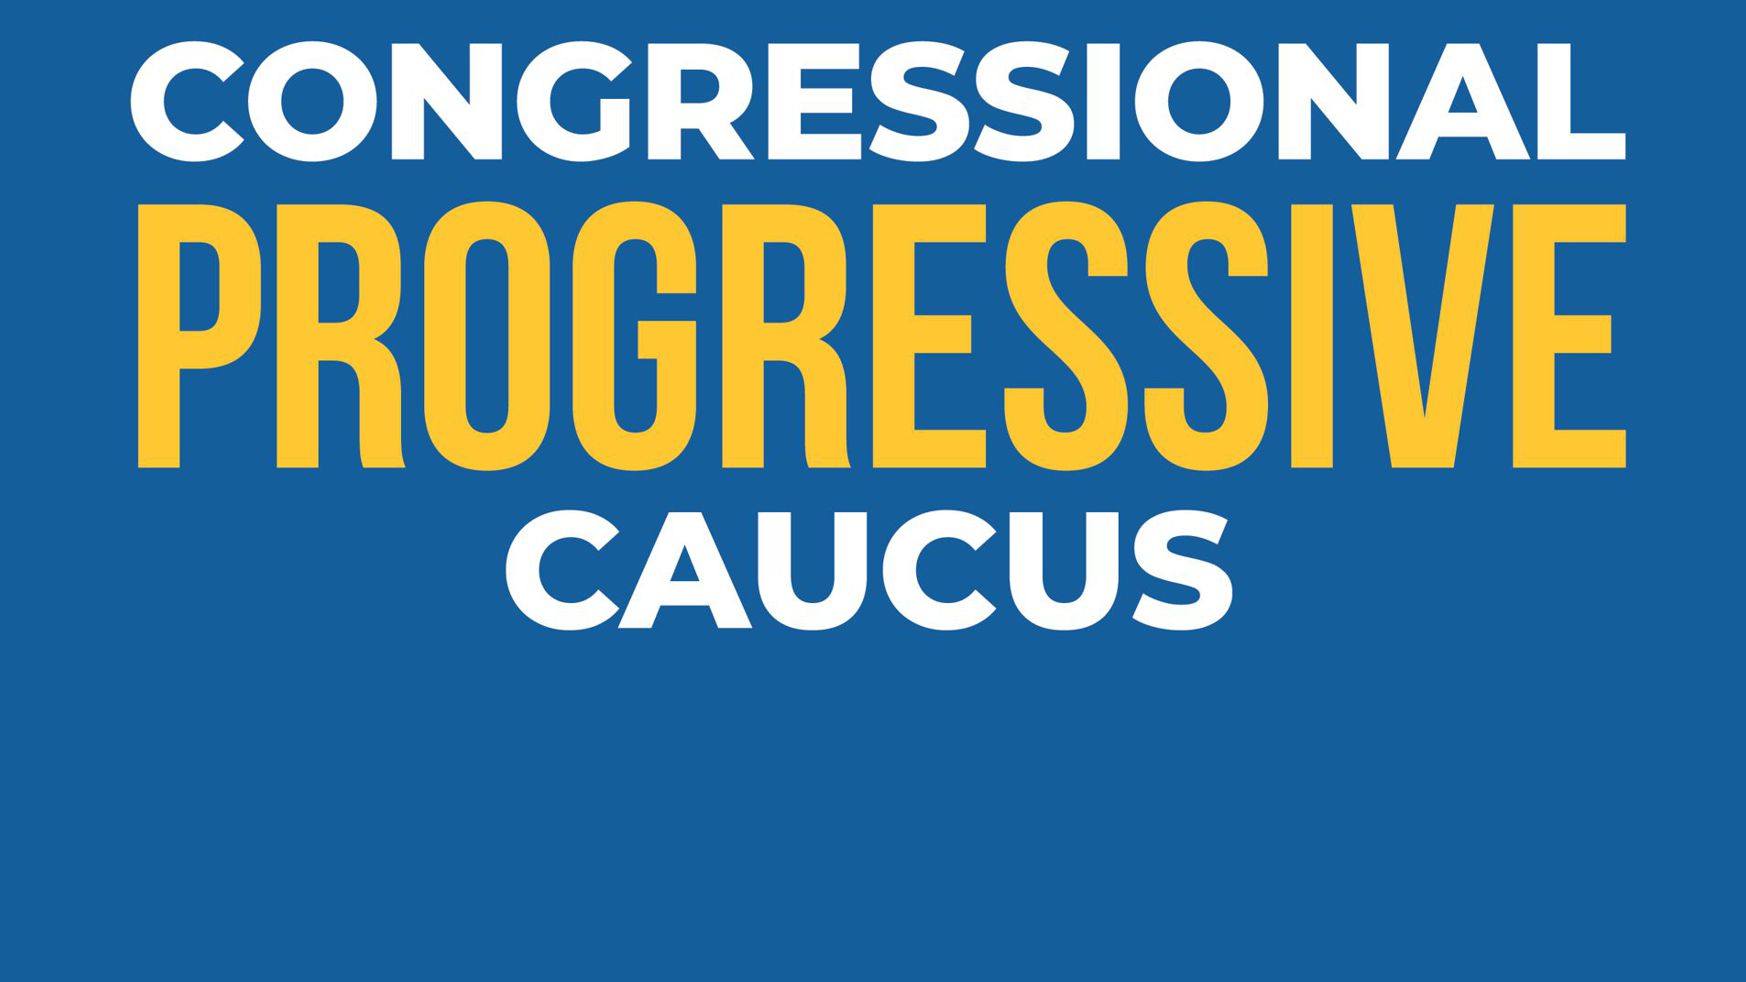 Congressional Progressive Caucus PAC